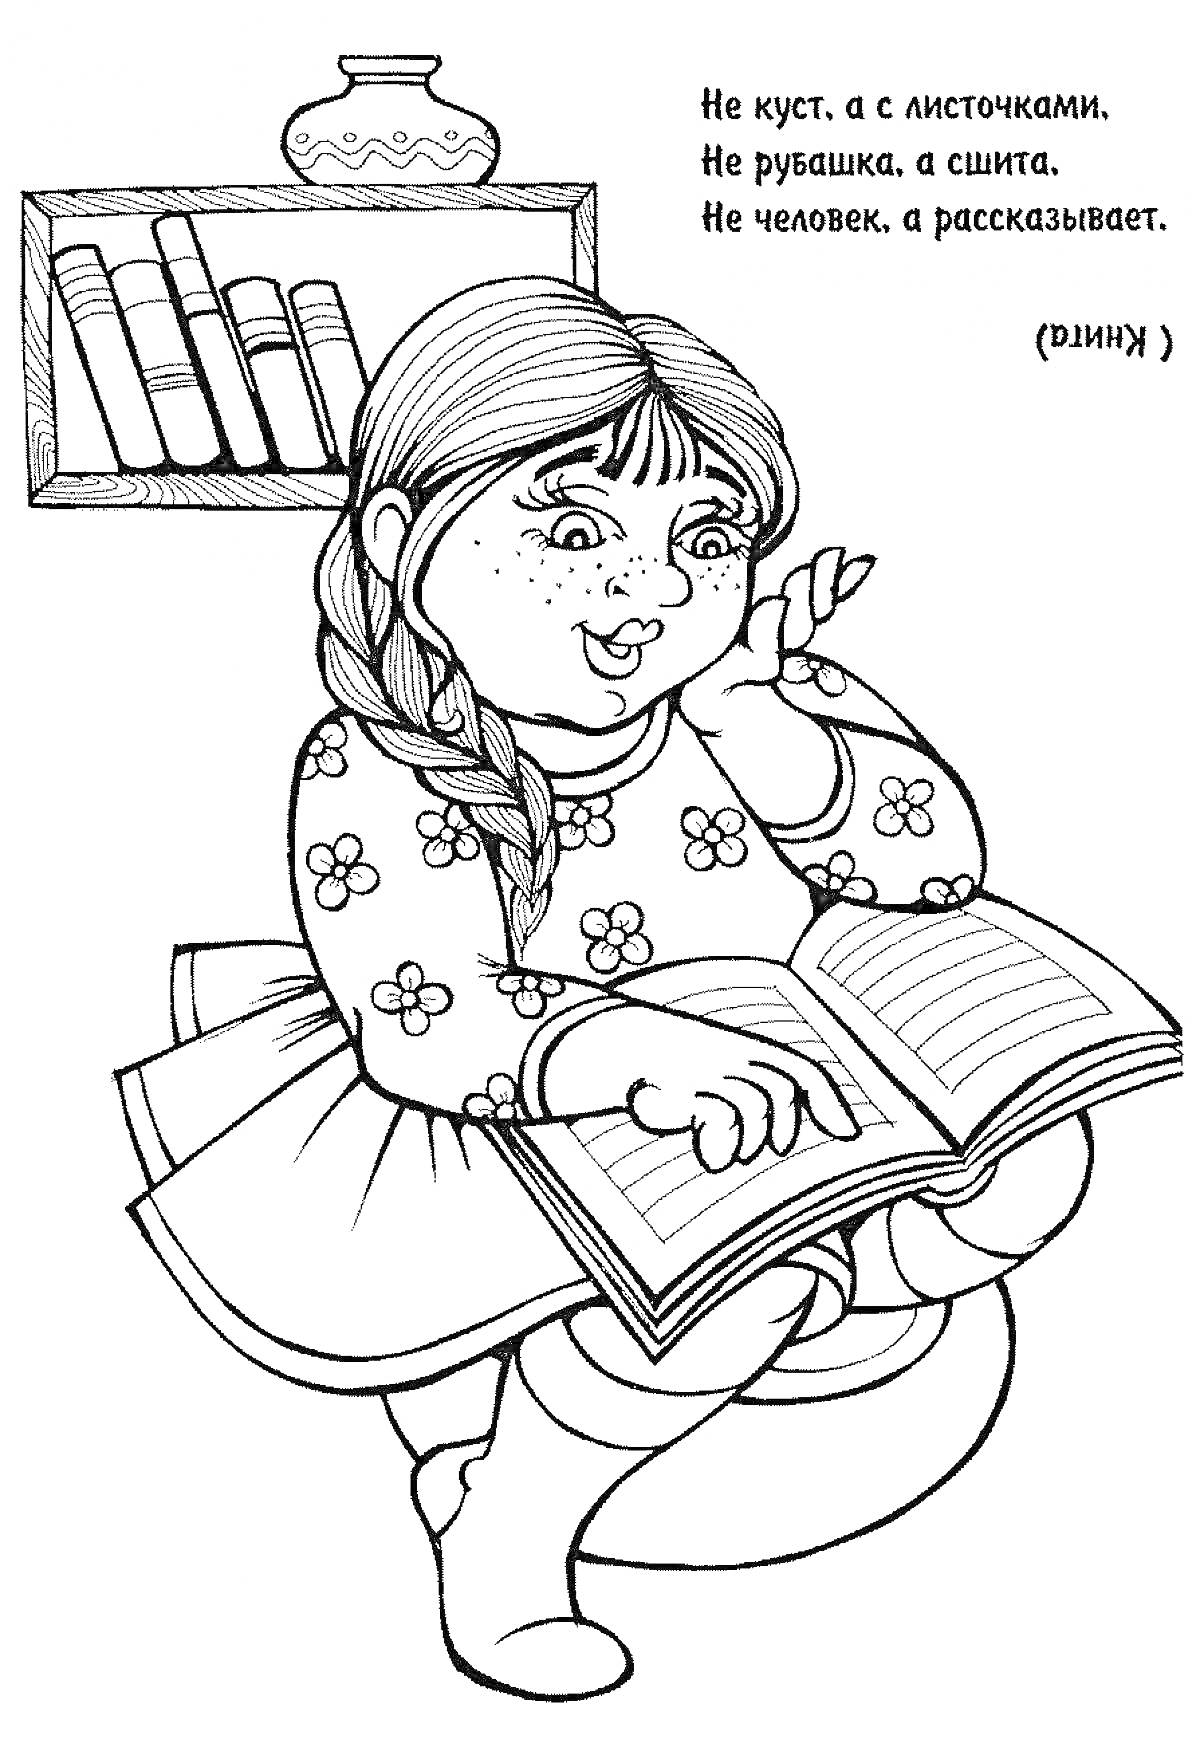 Раскраска Девочка с косичками читает книгу, книжный шкаф с книгами и кувшином на полке, пословица про книгу